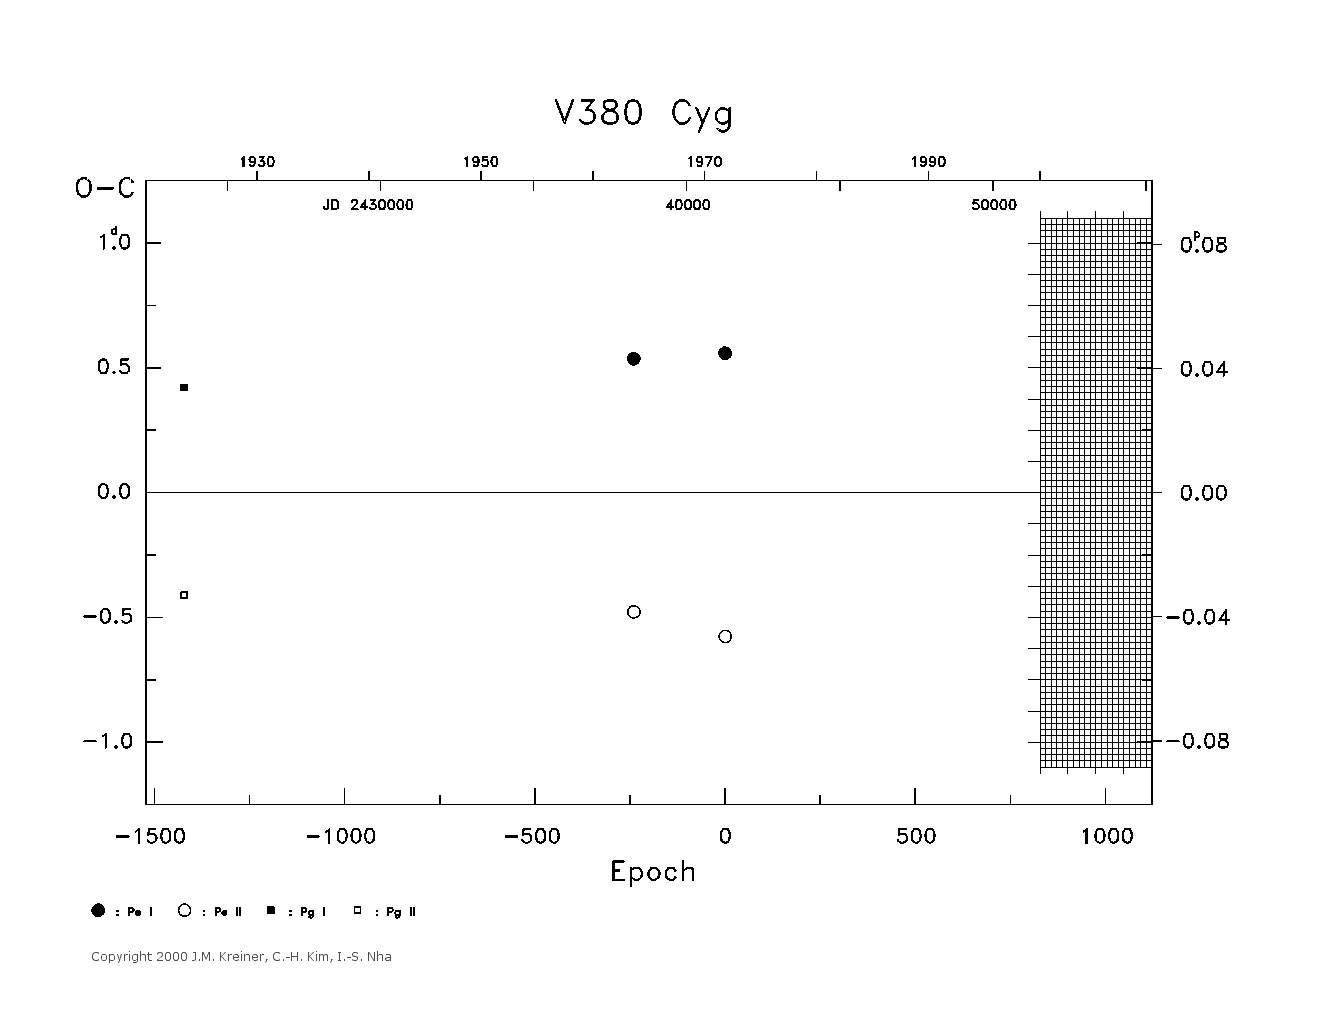 [IMAGE: large V380 CYG O-C diagram]